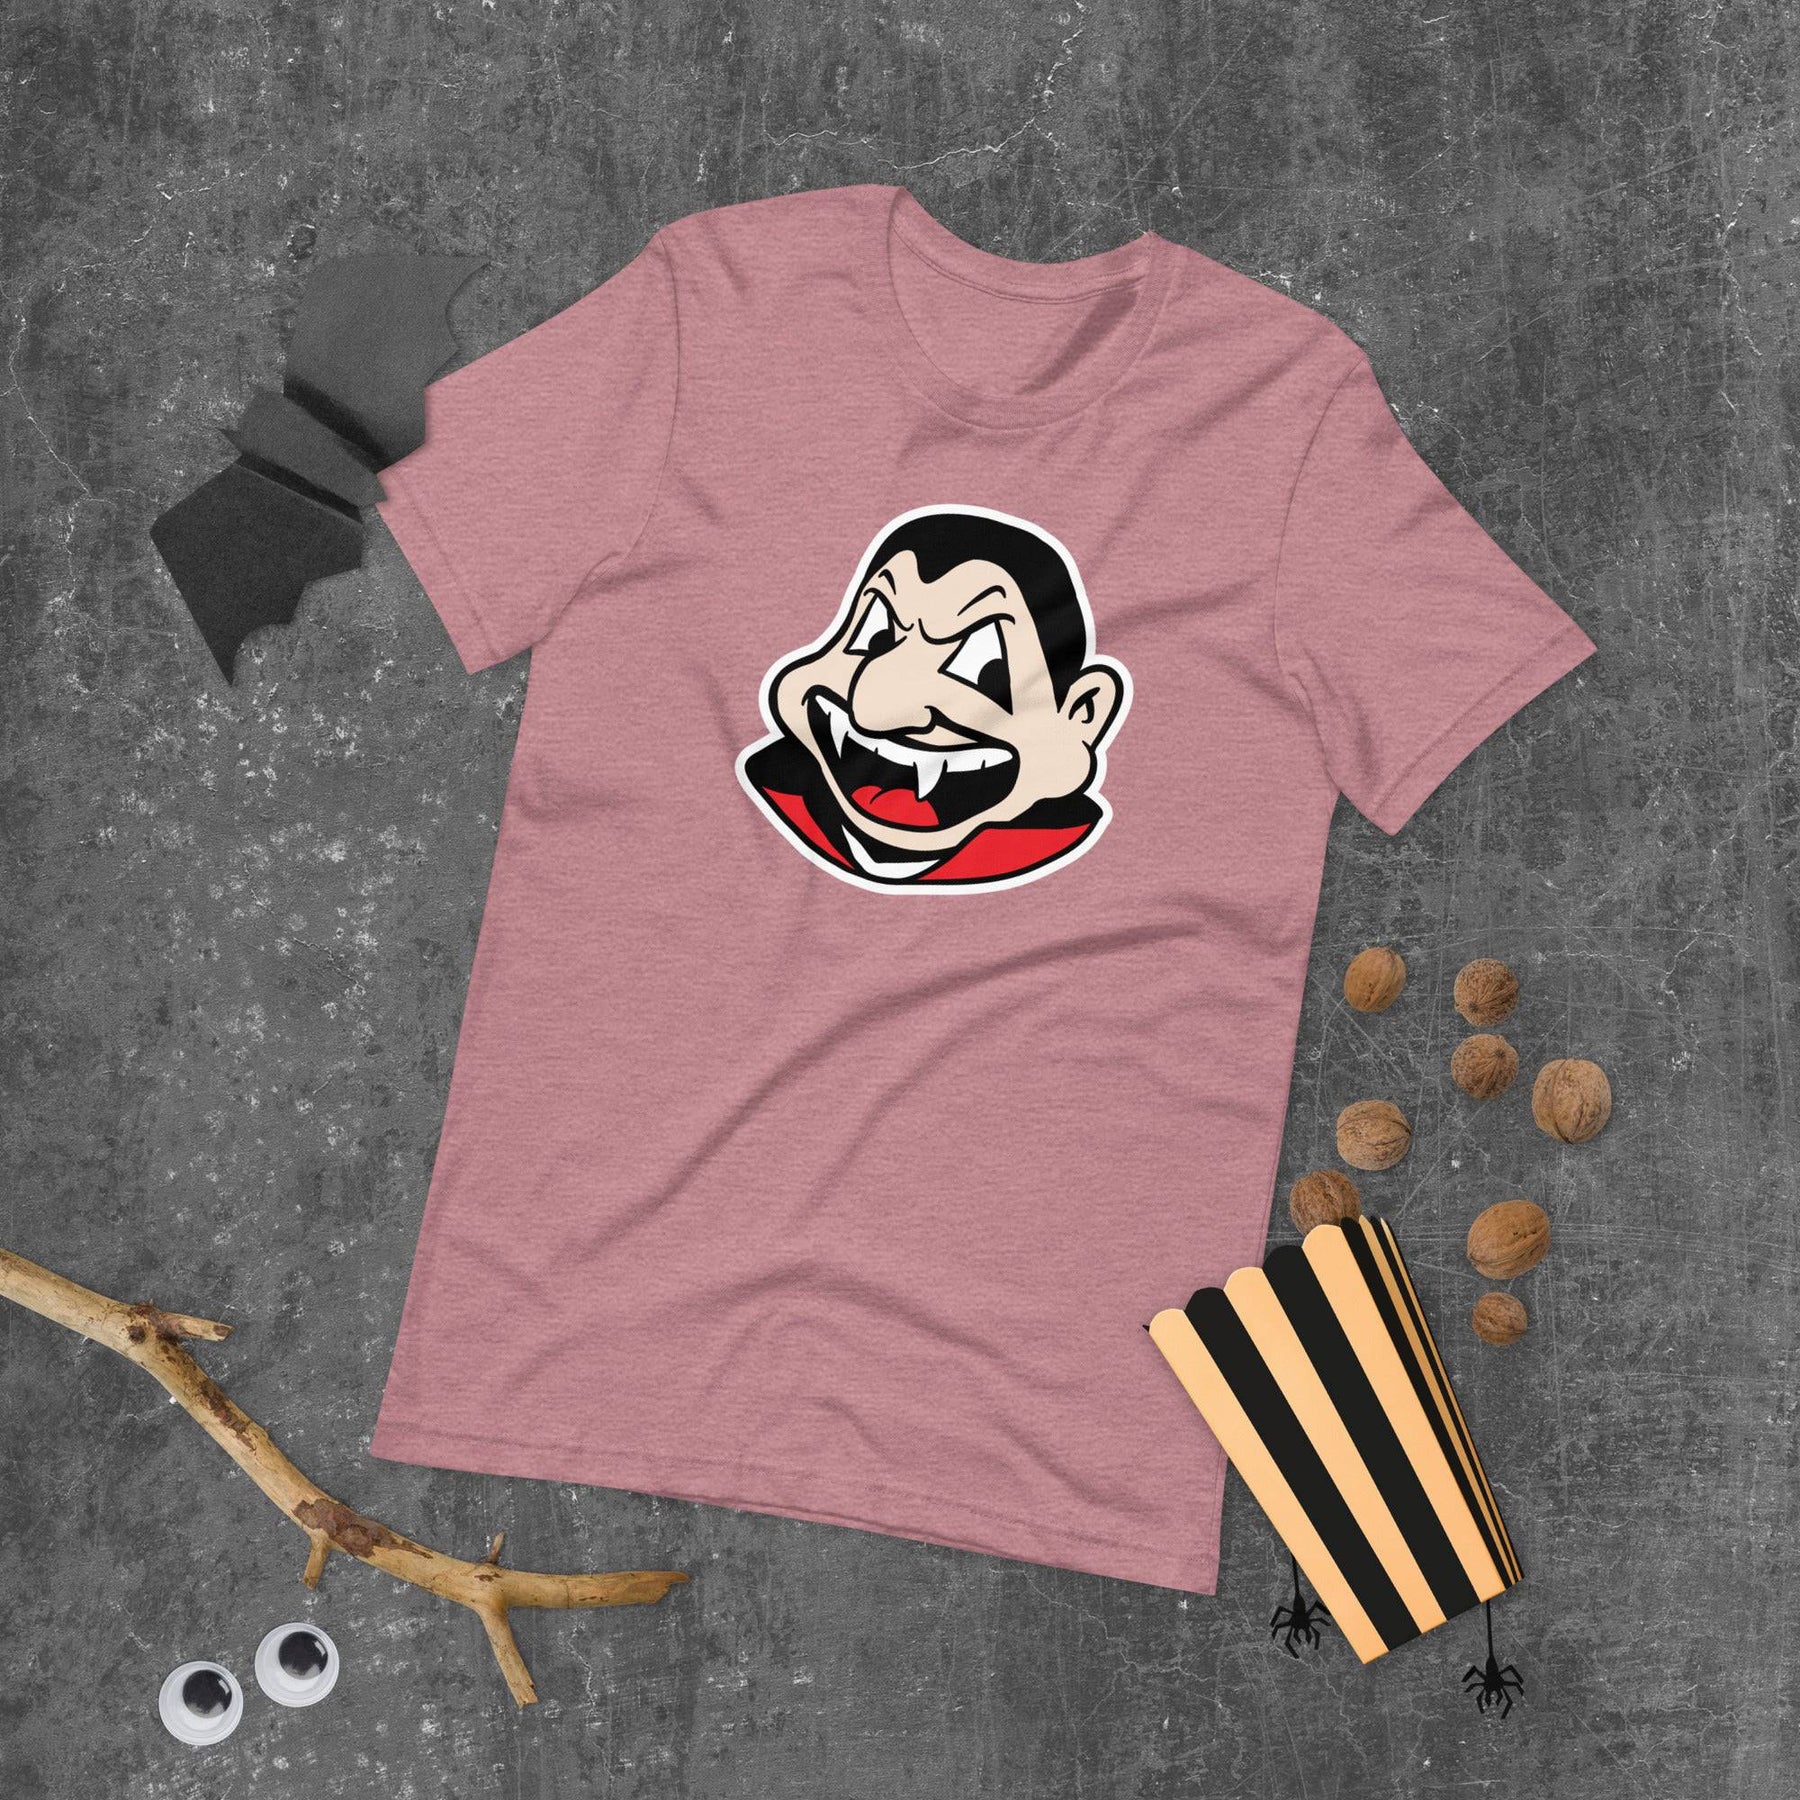 Cleveland - Halloween Vampire t-shirt, Shirts & Tops, WeBleedOhio, WeBleedOhio